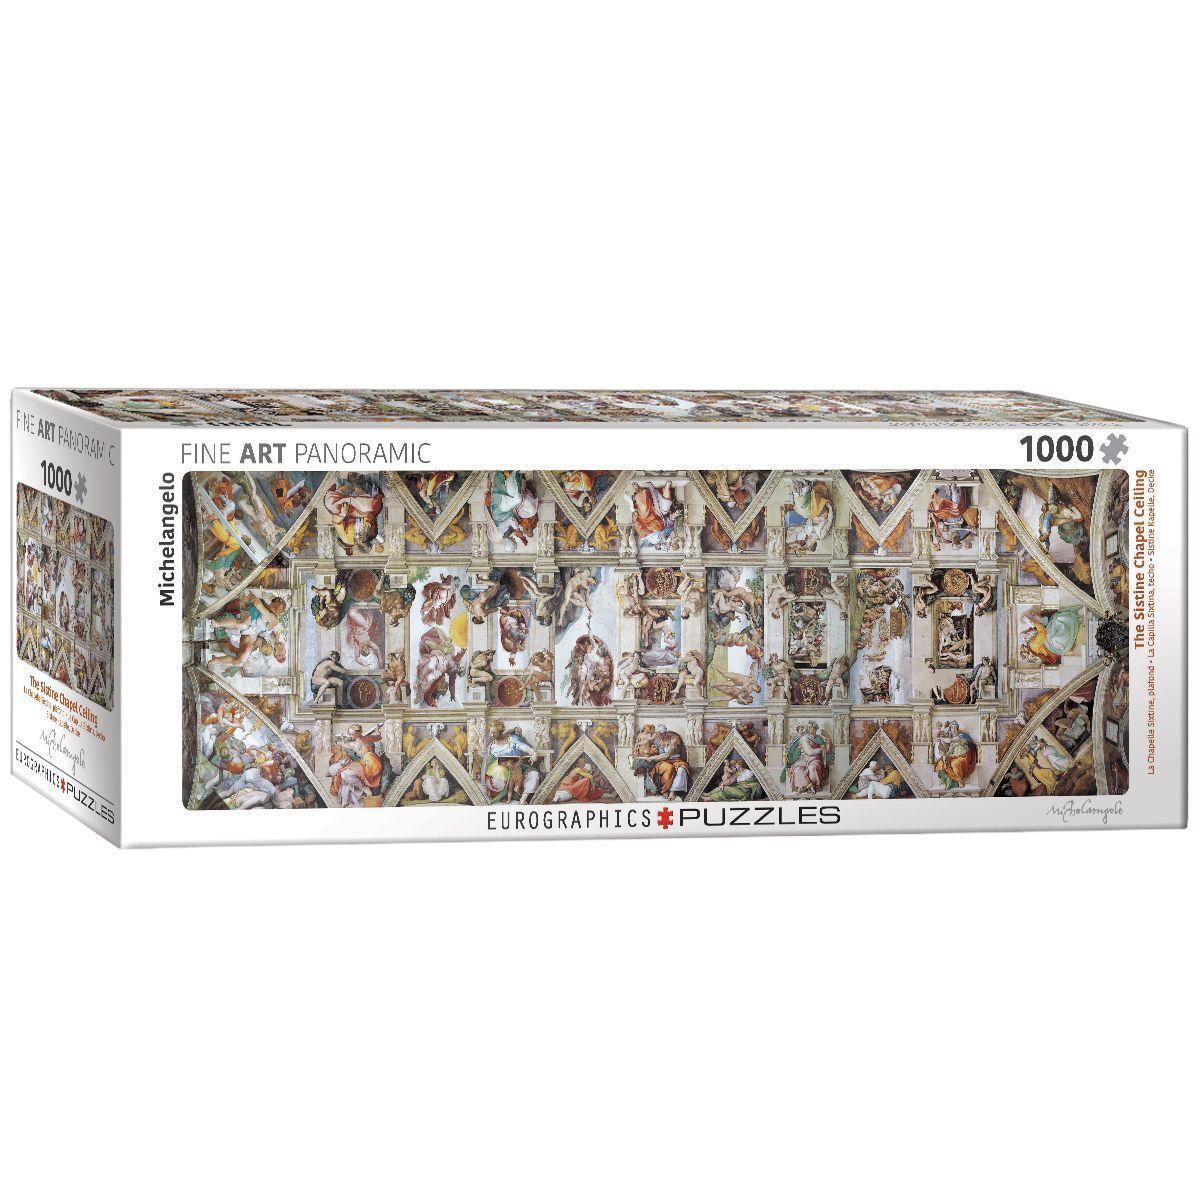 Cover: 628136609609 | Decke der Sixtinischen Kapelle. 1000-Teile | Michelangelo | Spiel